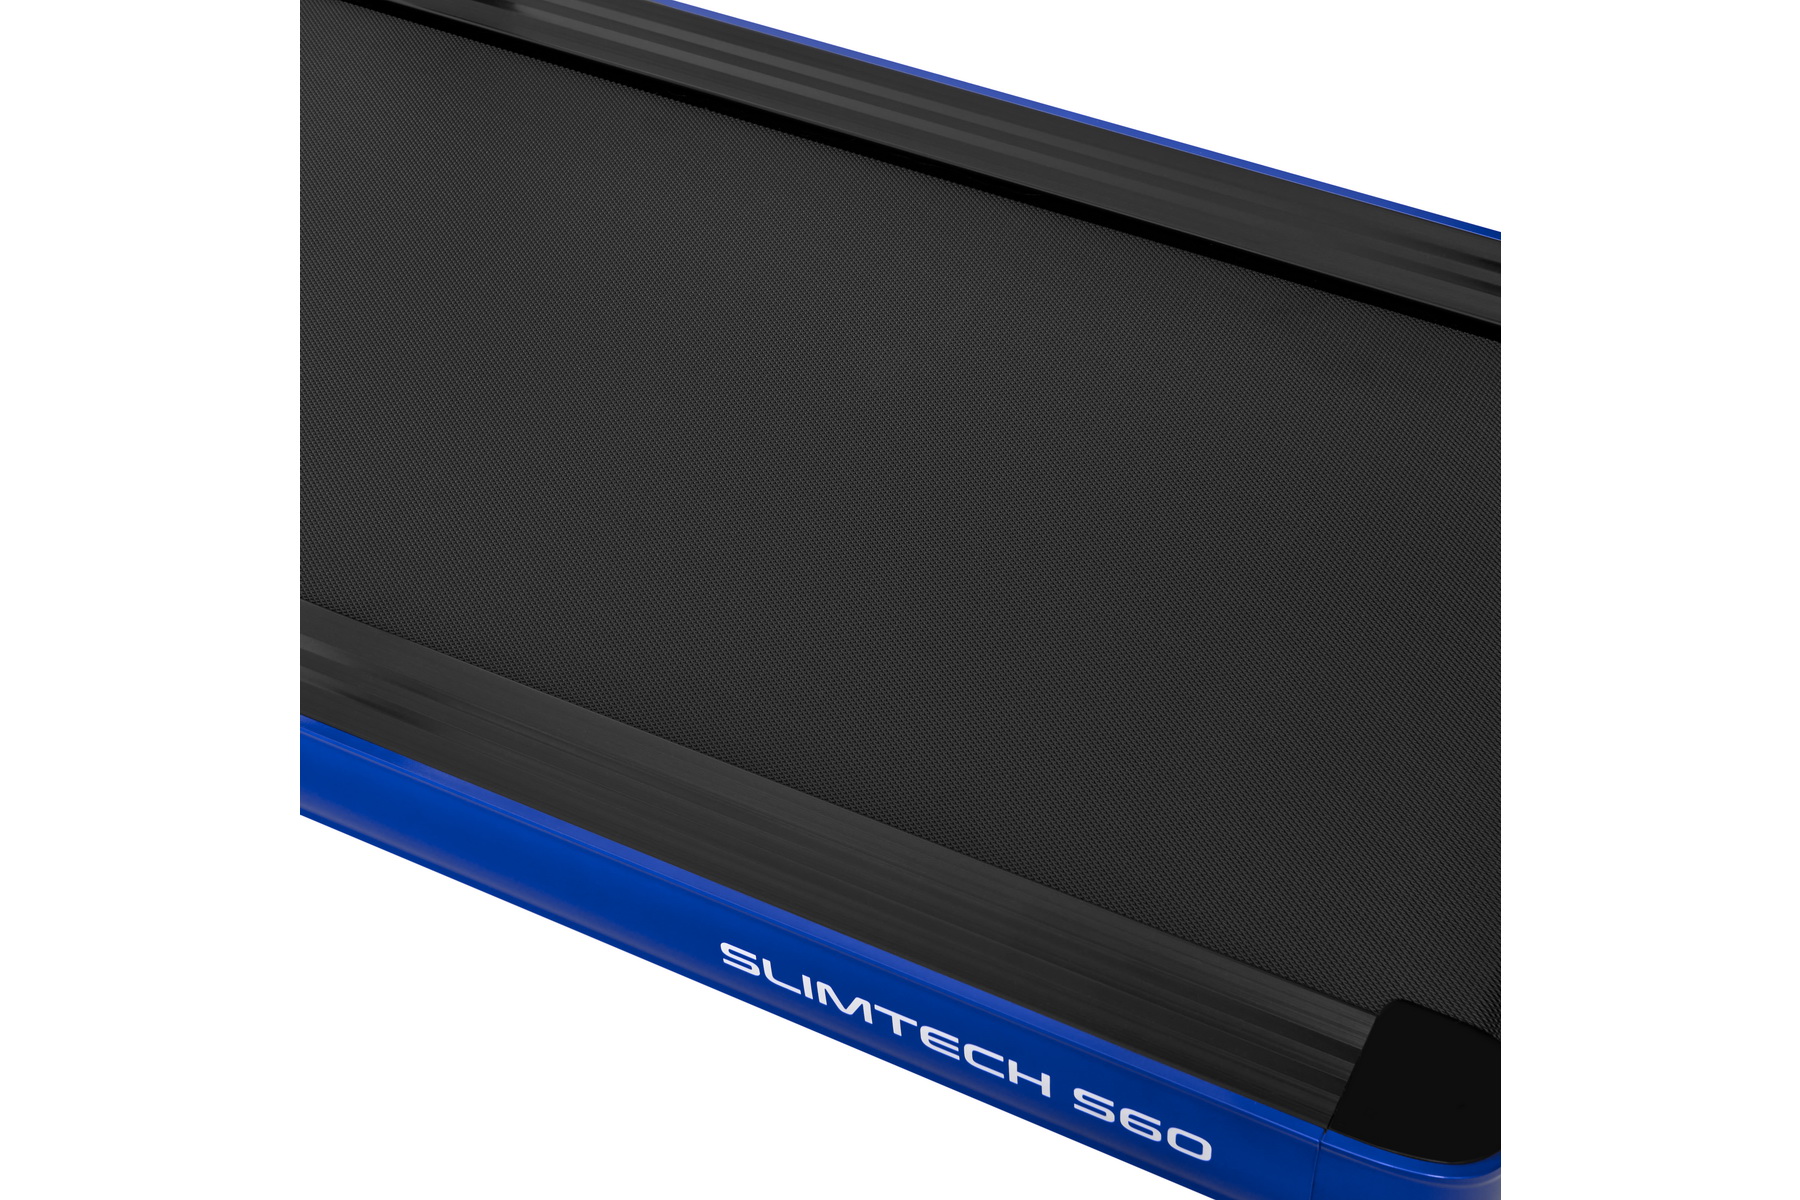 Беговая дорожка Titanium Masters Slimtech S60, синяя